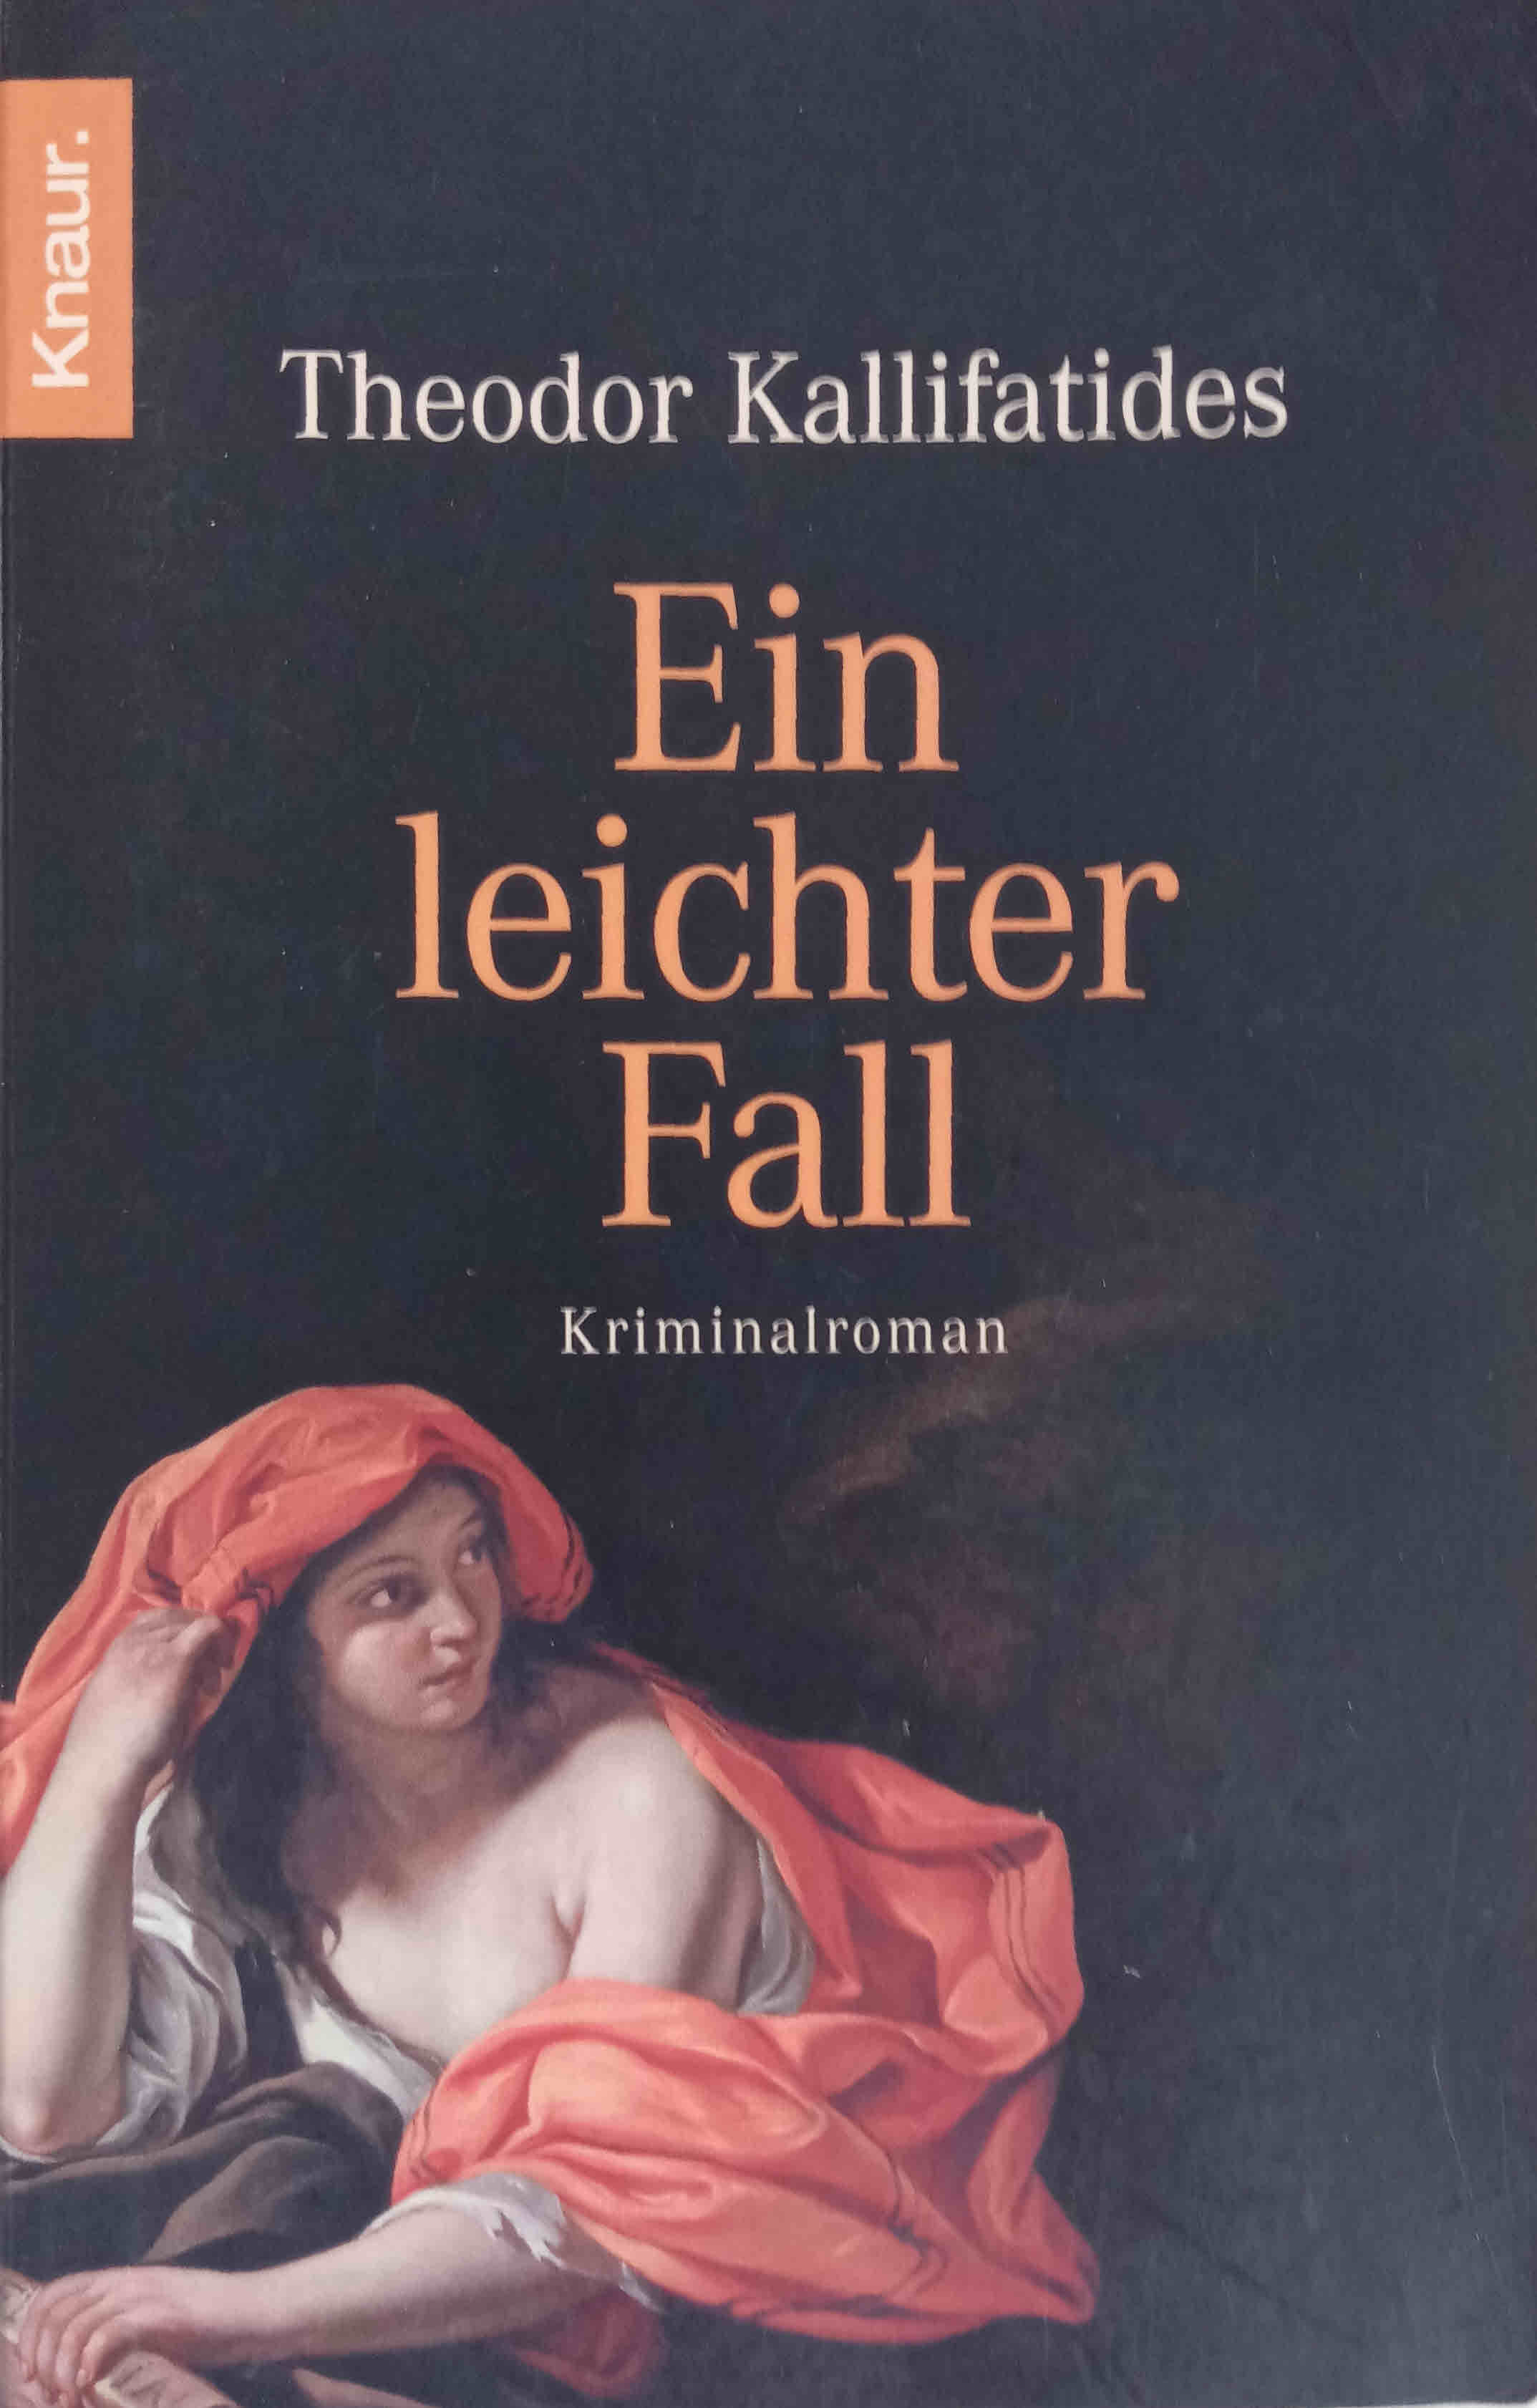 Ein leichter Fall : Roman. Aus dem Schwed. von Susanne Dahmann / Knaur ; 62794 - Kallifatides, Theodor